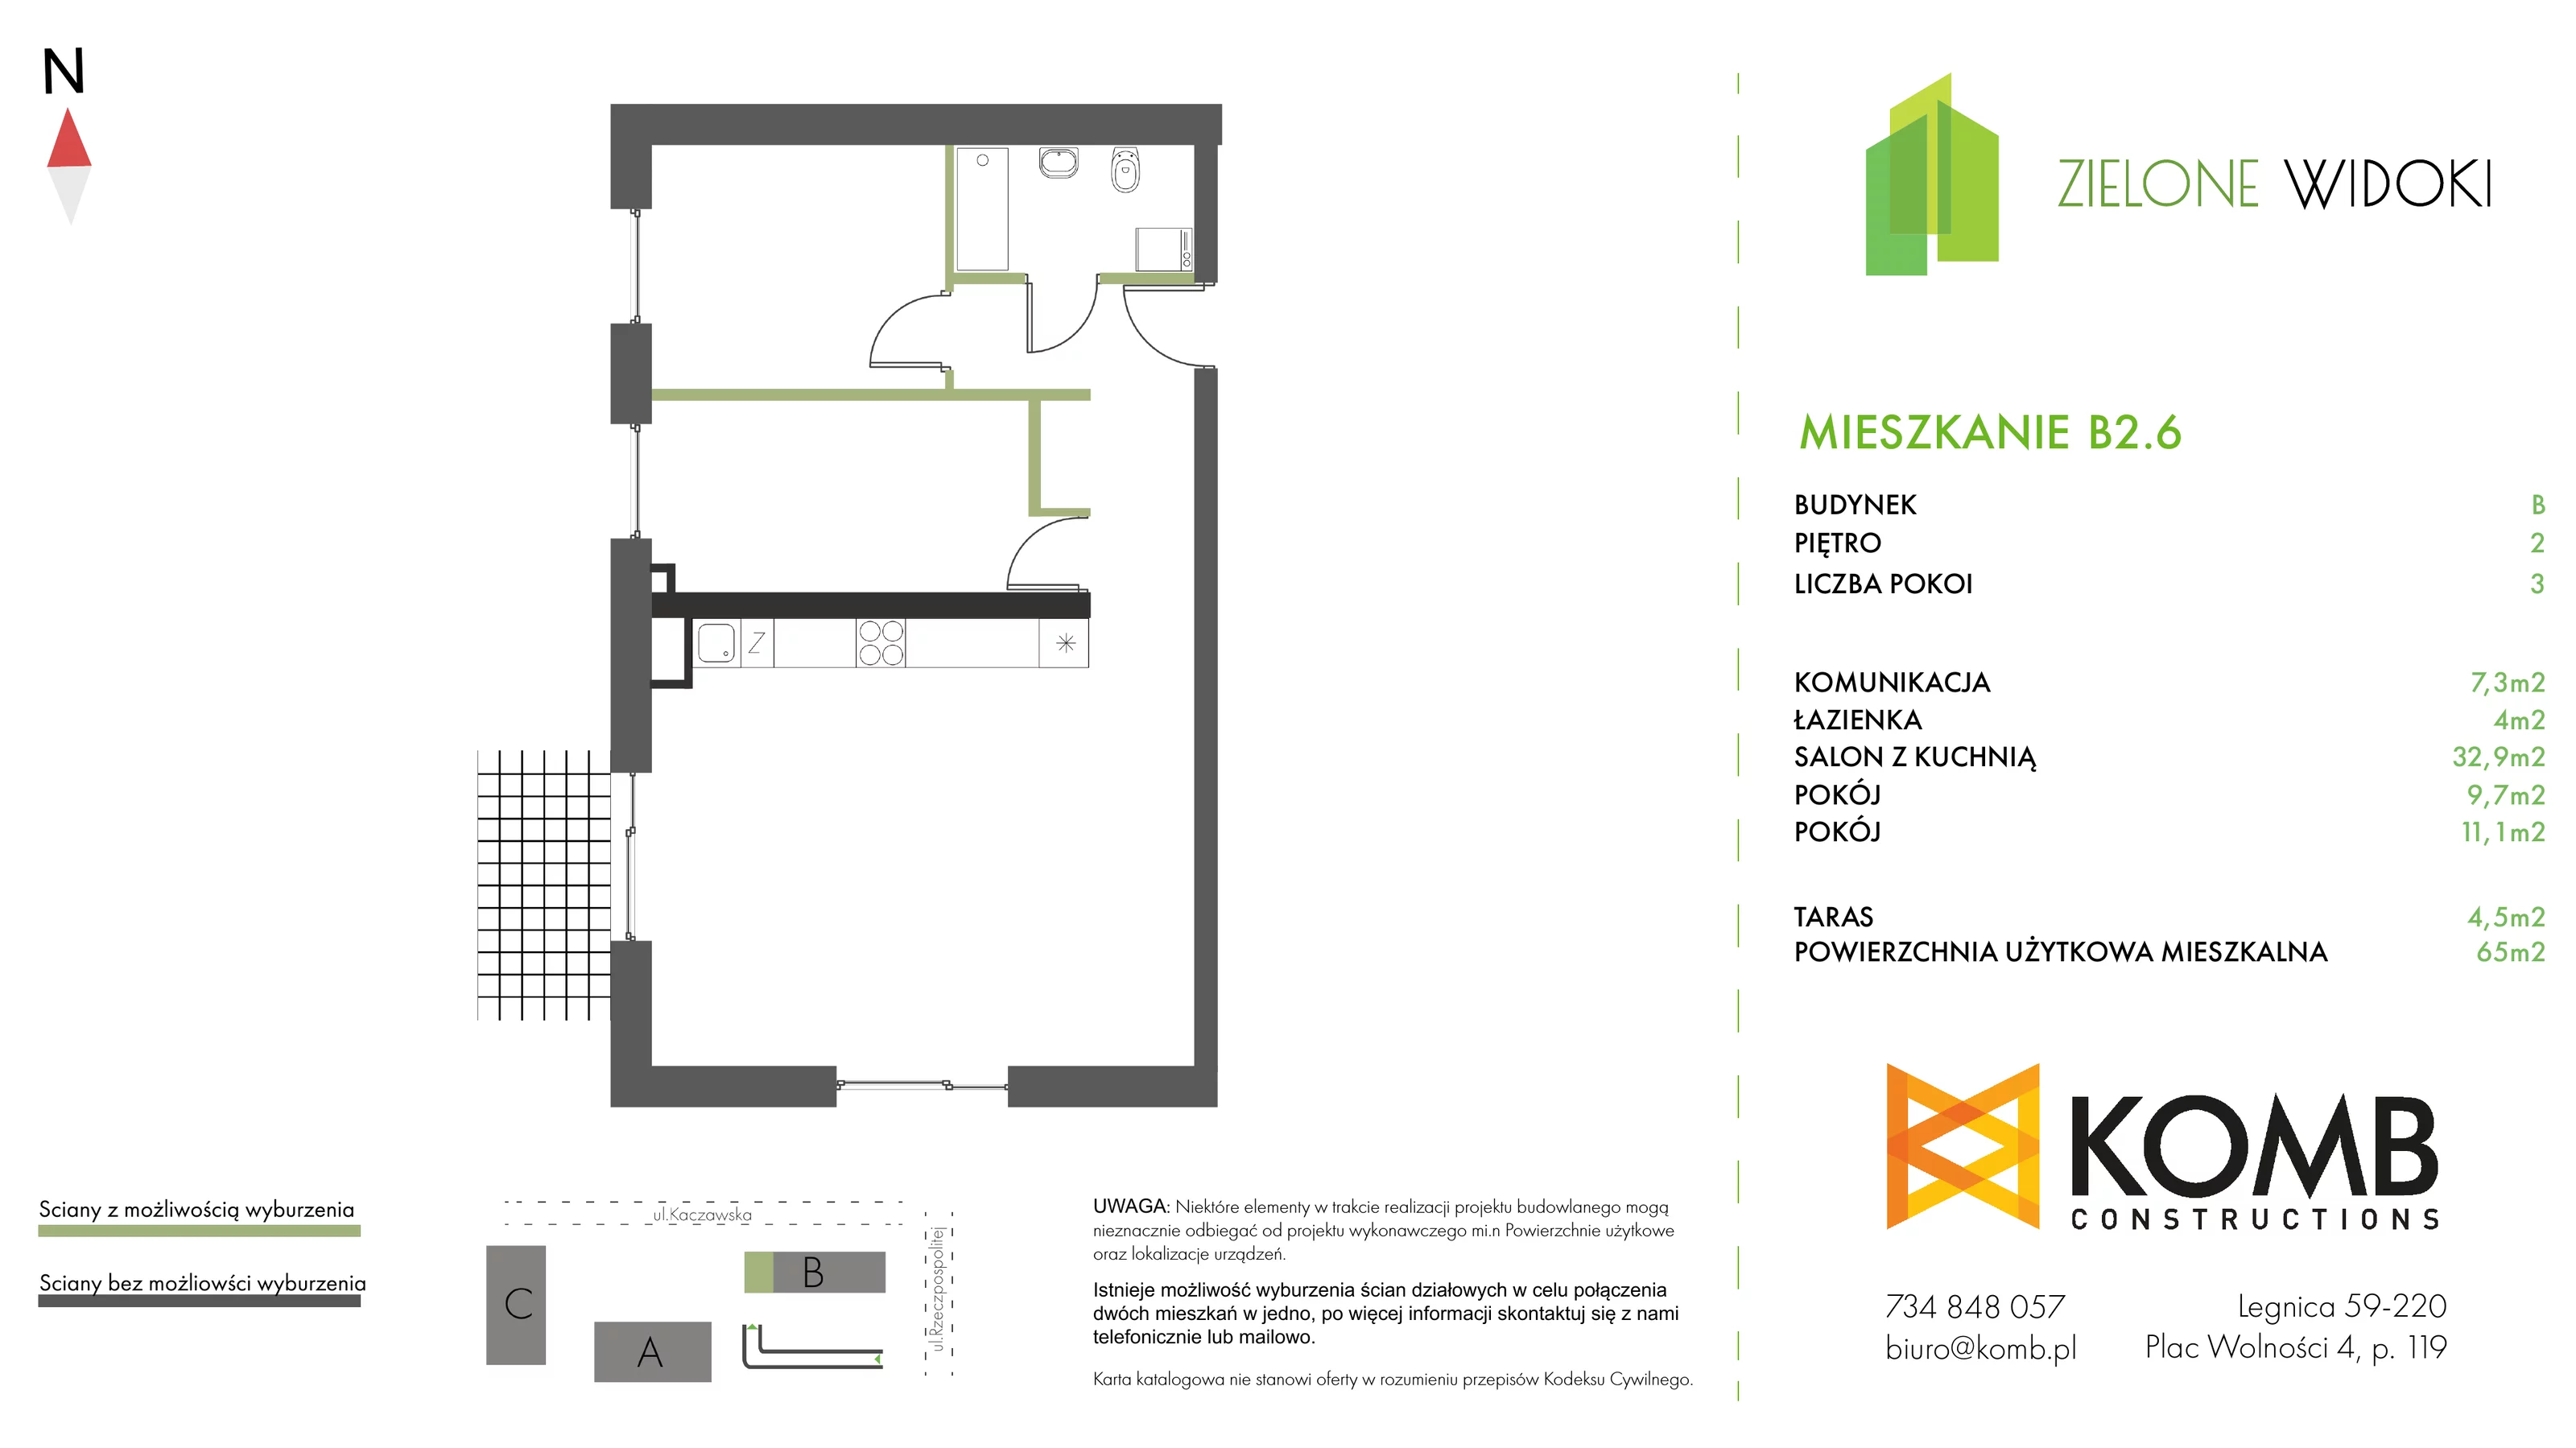 Mieszkanie 65,00 m², piętro 2, oferta nr B2.6, Zielone Widoki, Legnica, Bielany, al. Rzeczypospolitej 23